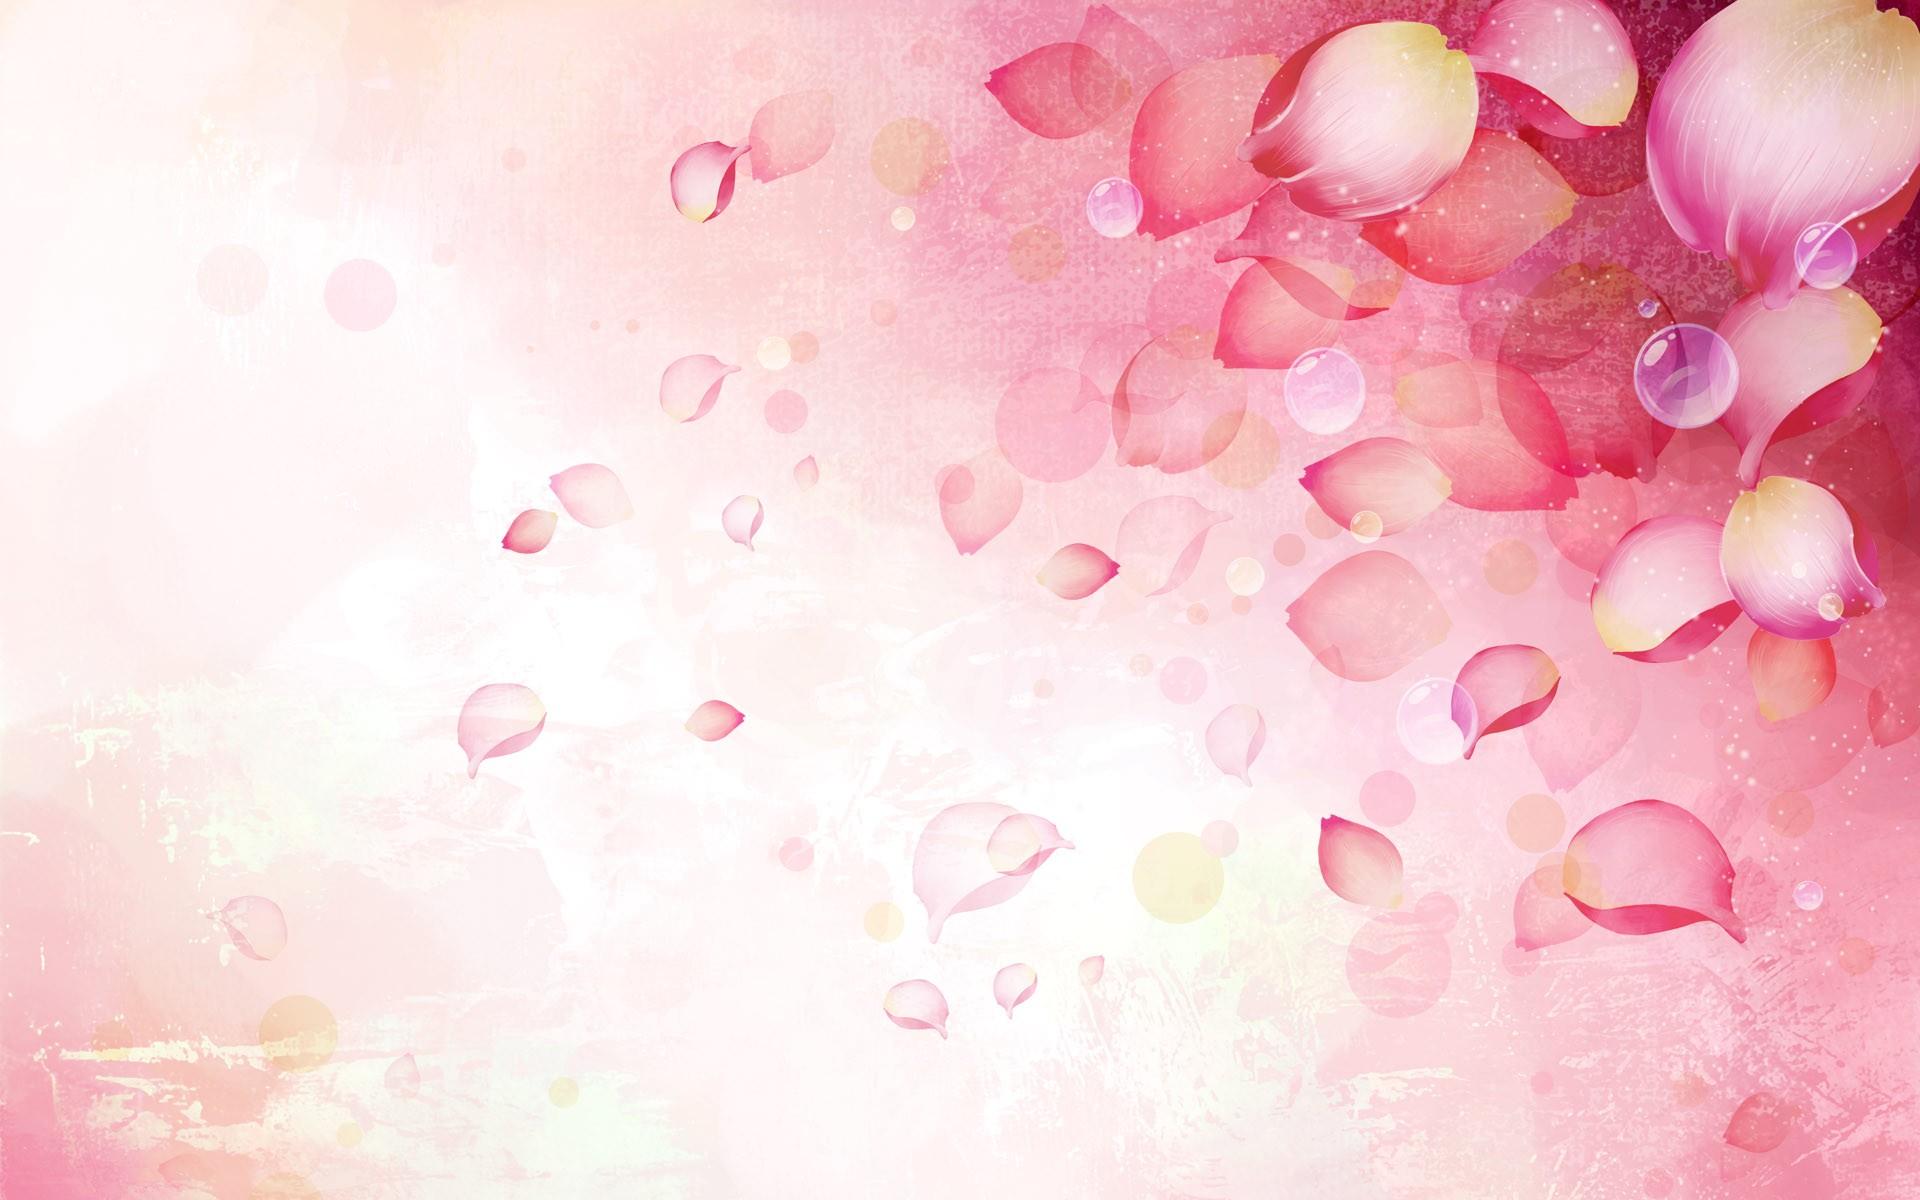 The Rose Petals Art HD Wallpaper